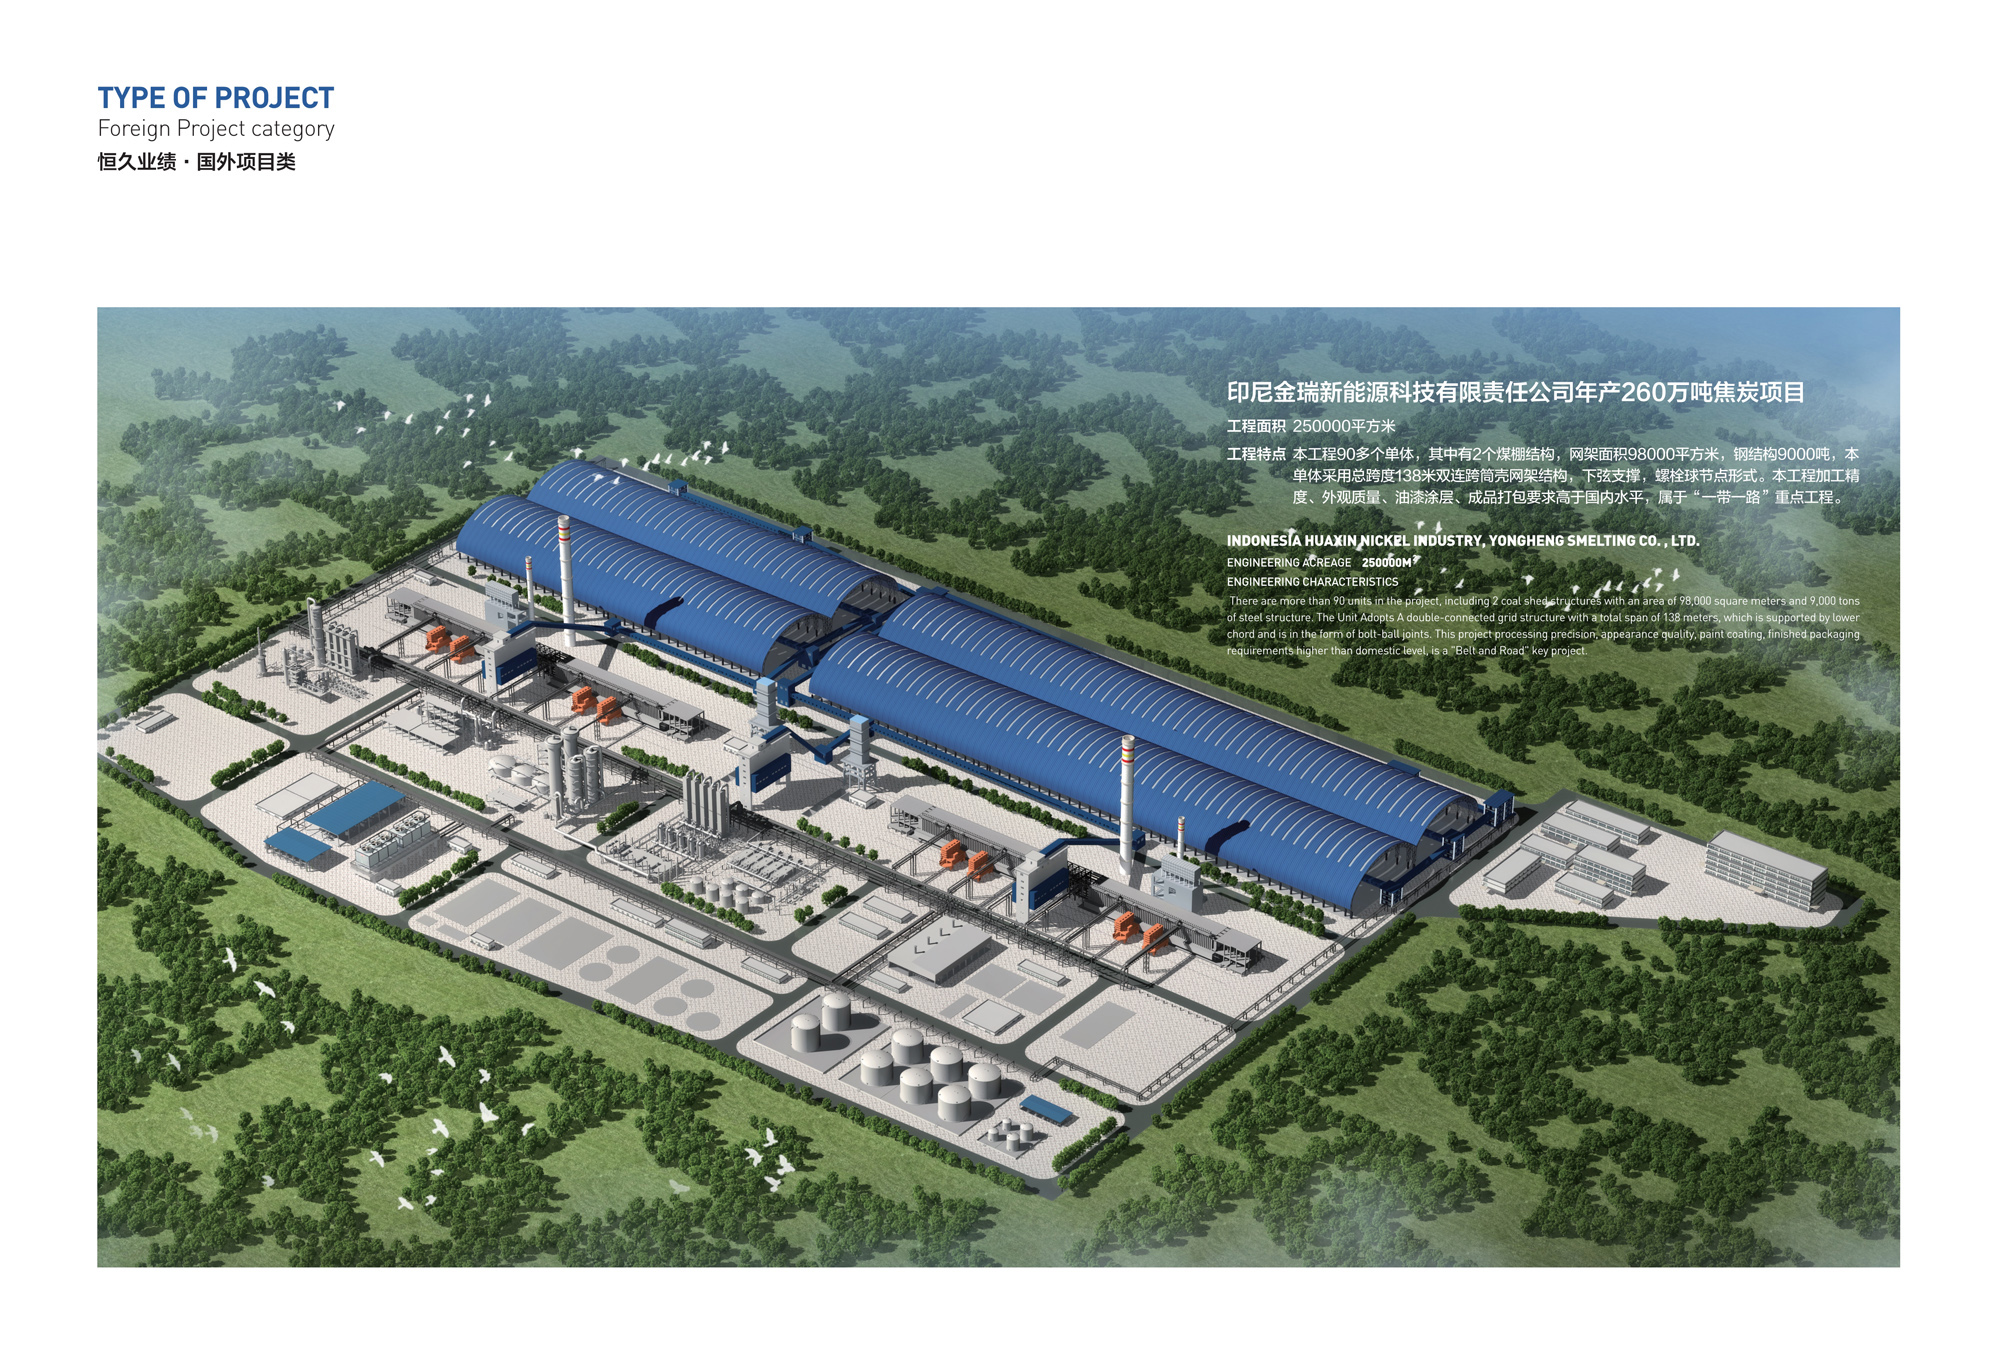 印尼金瑞新能源科技有限责任公司年产260万吨焦炭项目